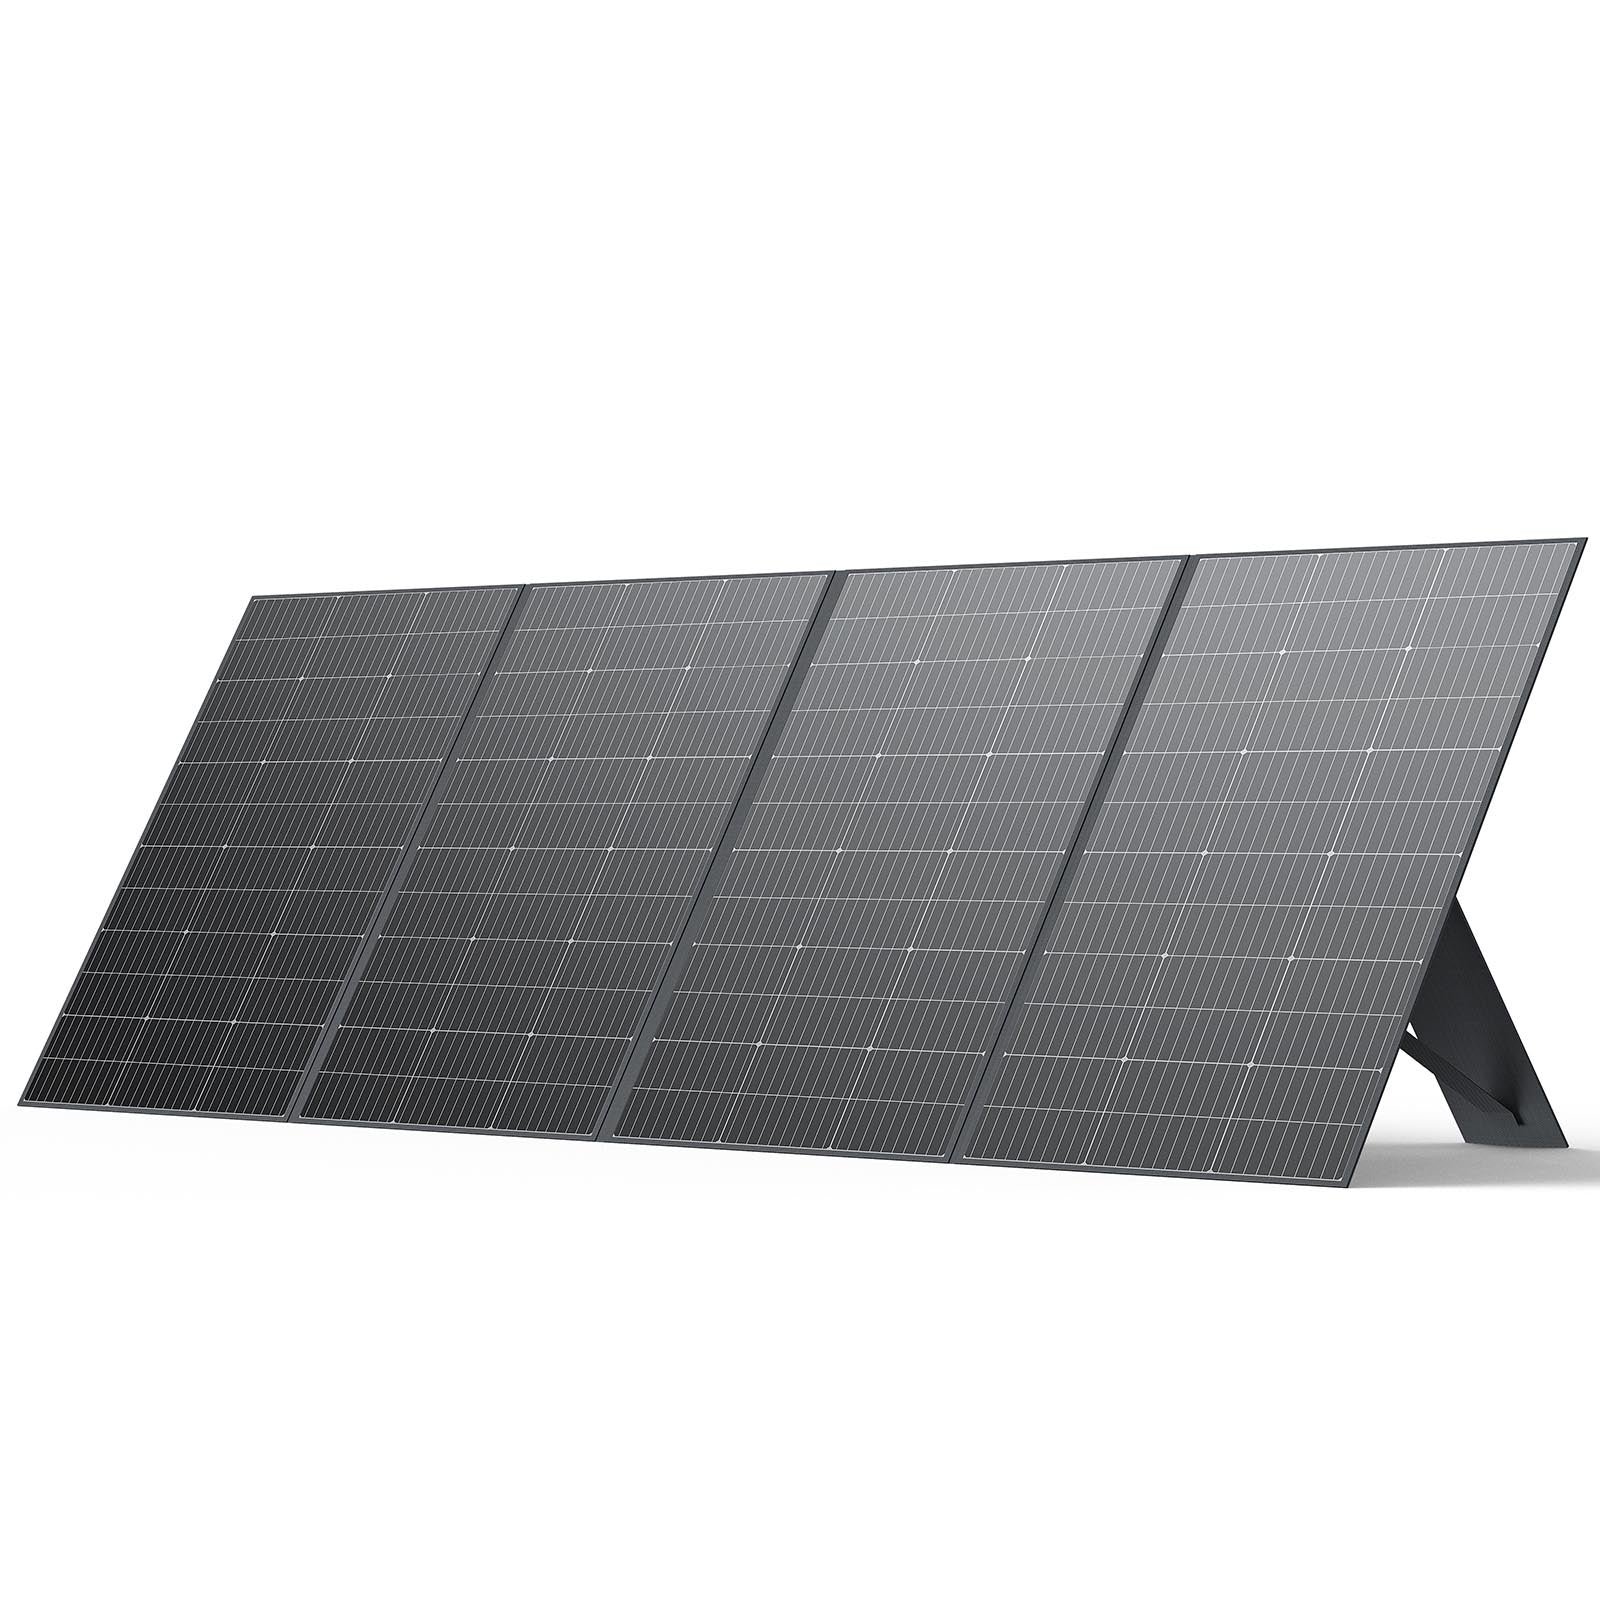 DBS420S Tragbares Solarpanel für Kraftwerk | 420W